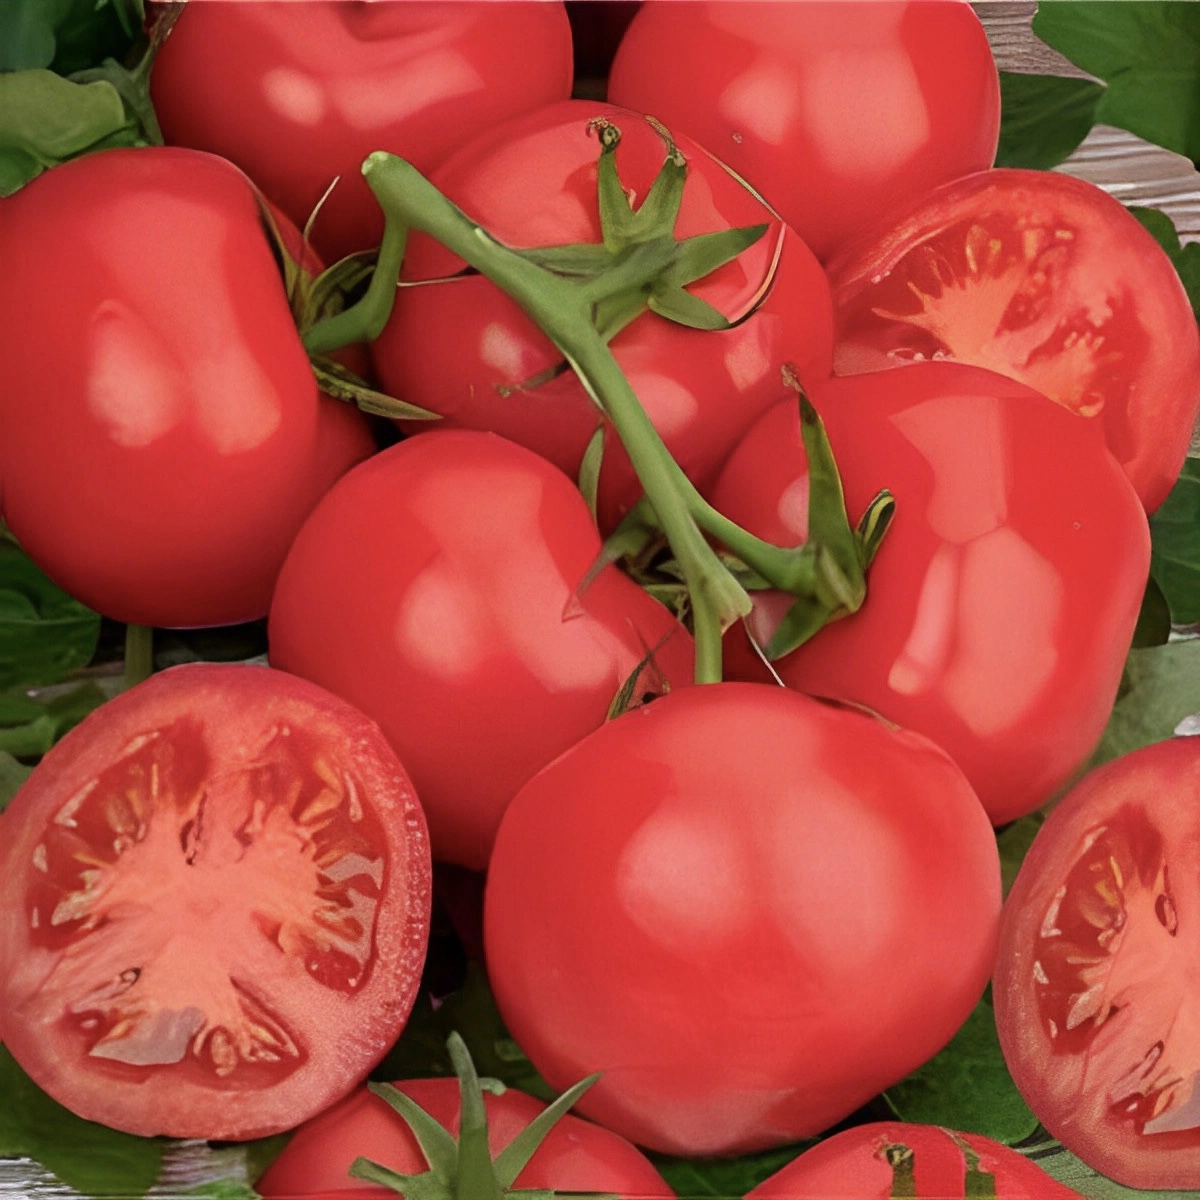 tomates grape rouge pretes a consommer et trois moities de tomates coupee